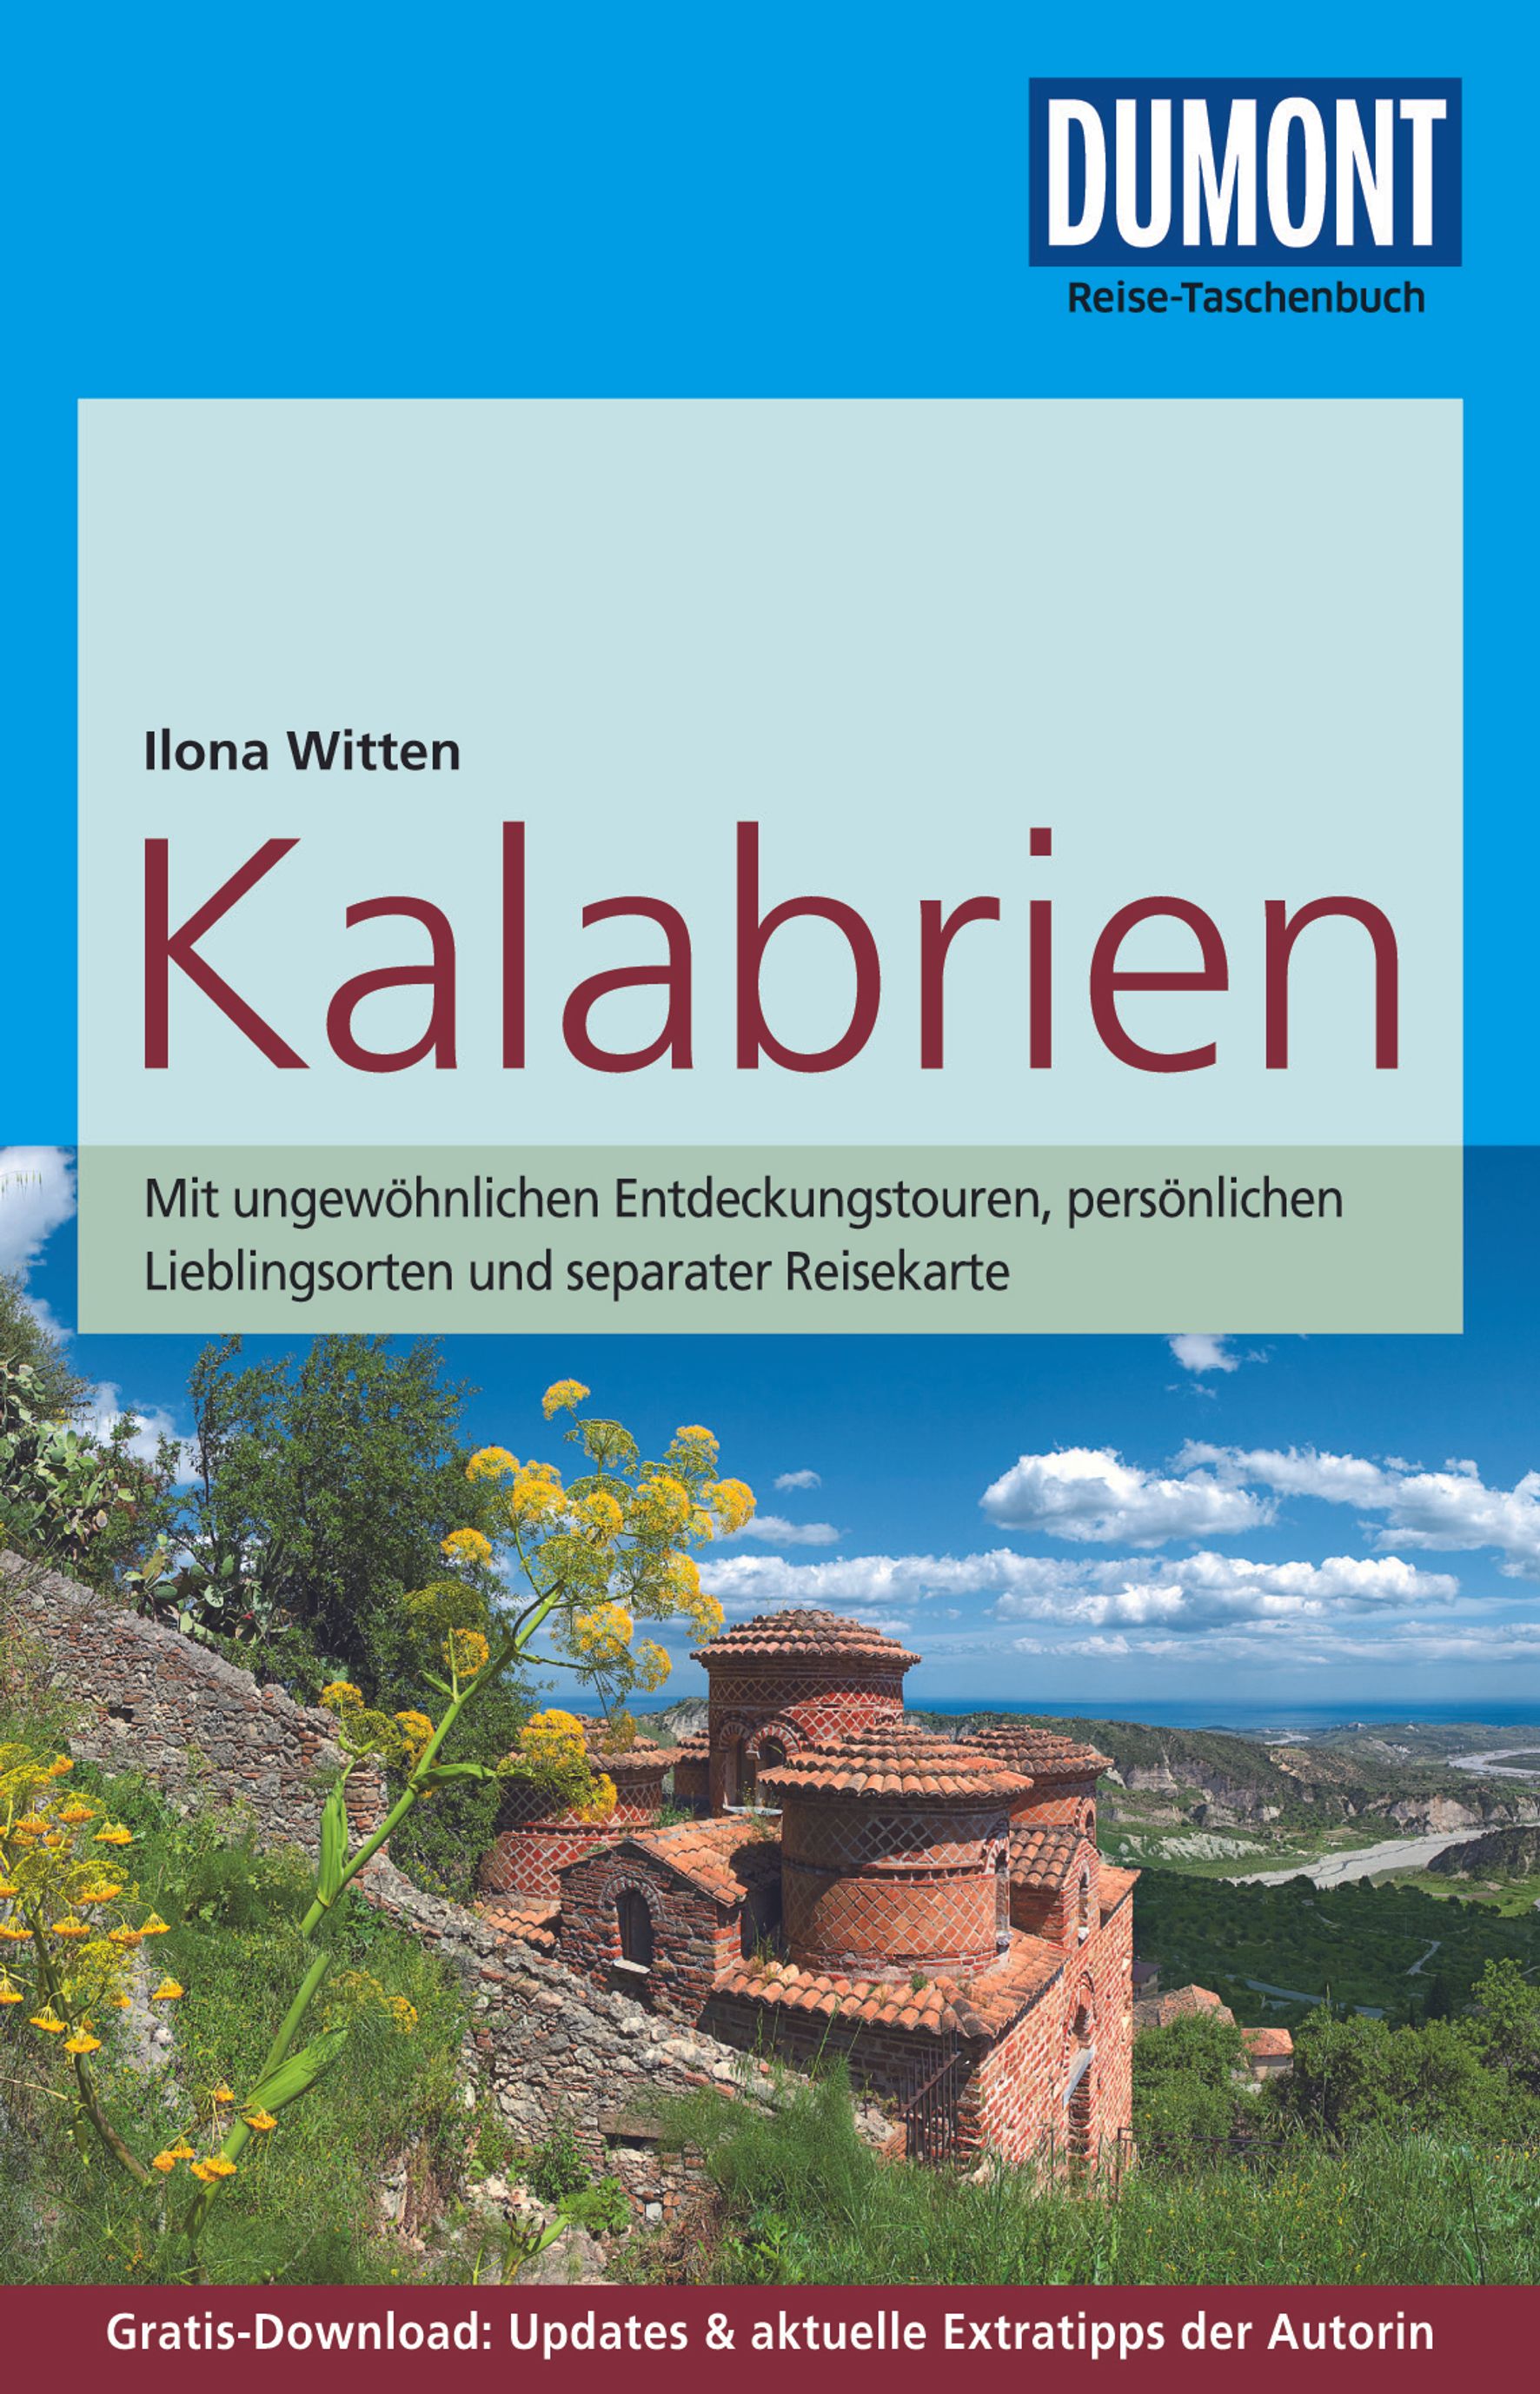 MAIRDUMONT Kalabrien (eBook)